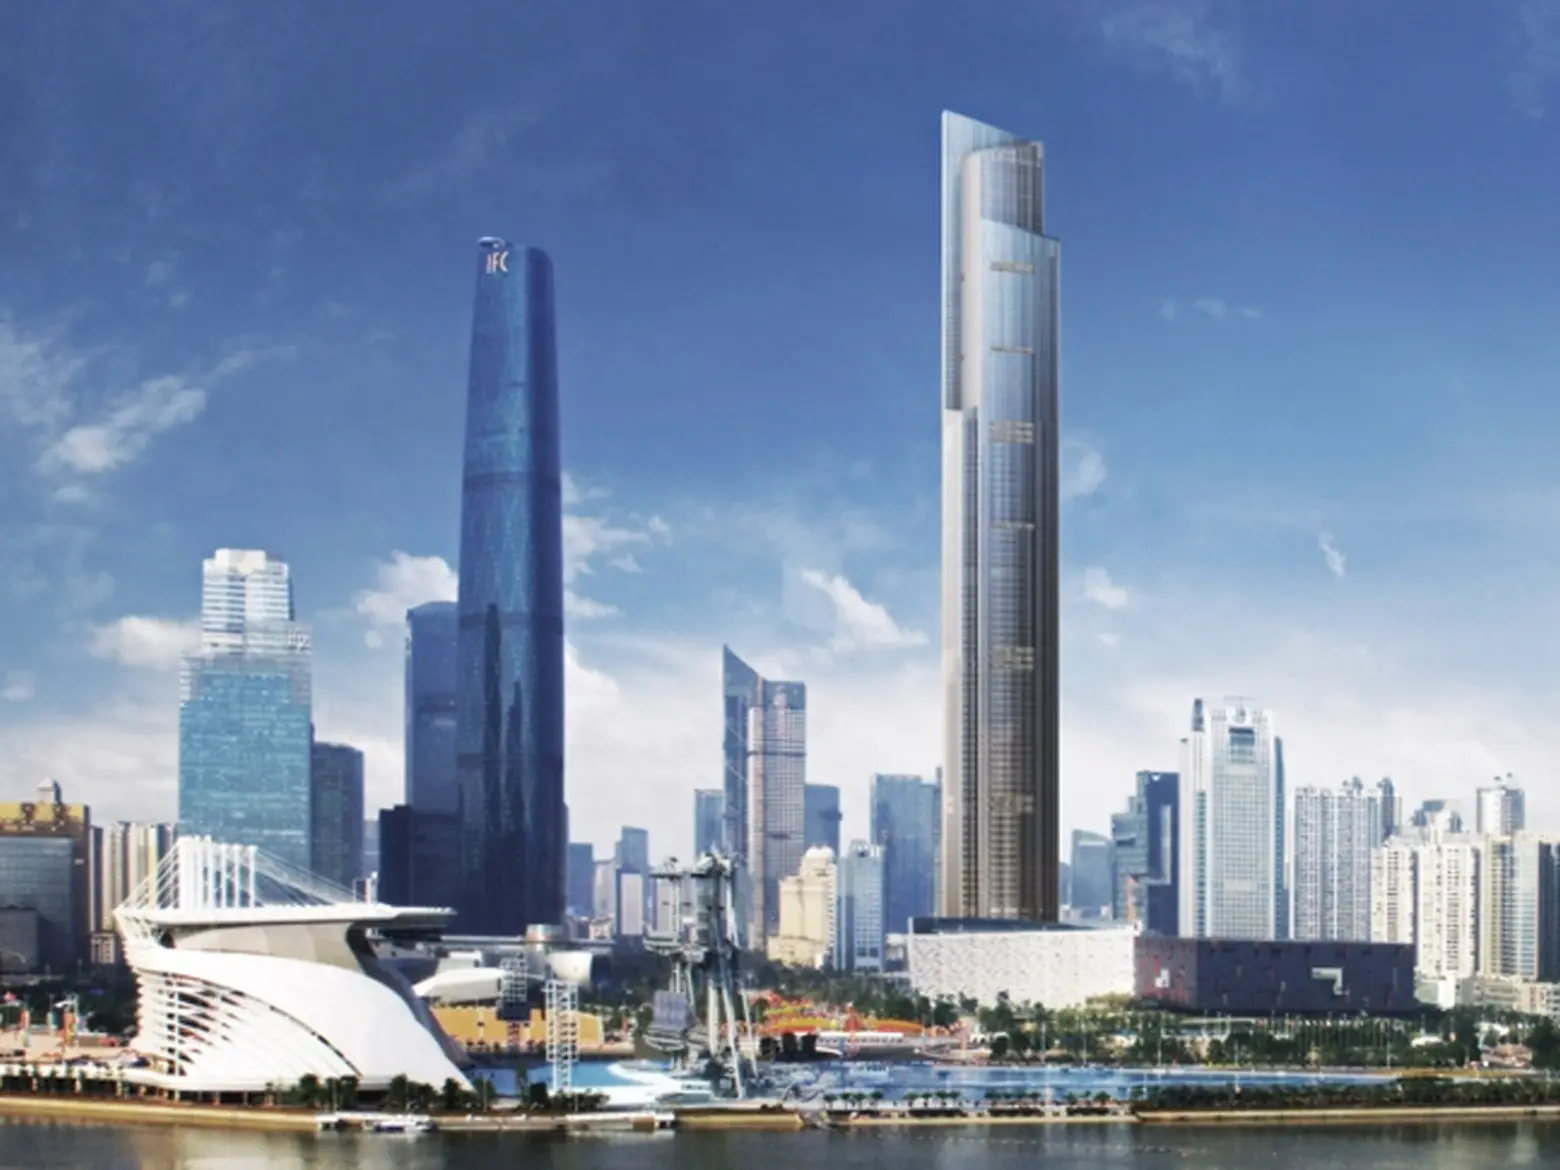 The Guangzhou CTF Finance Center